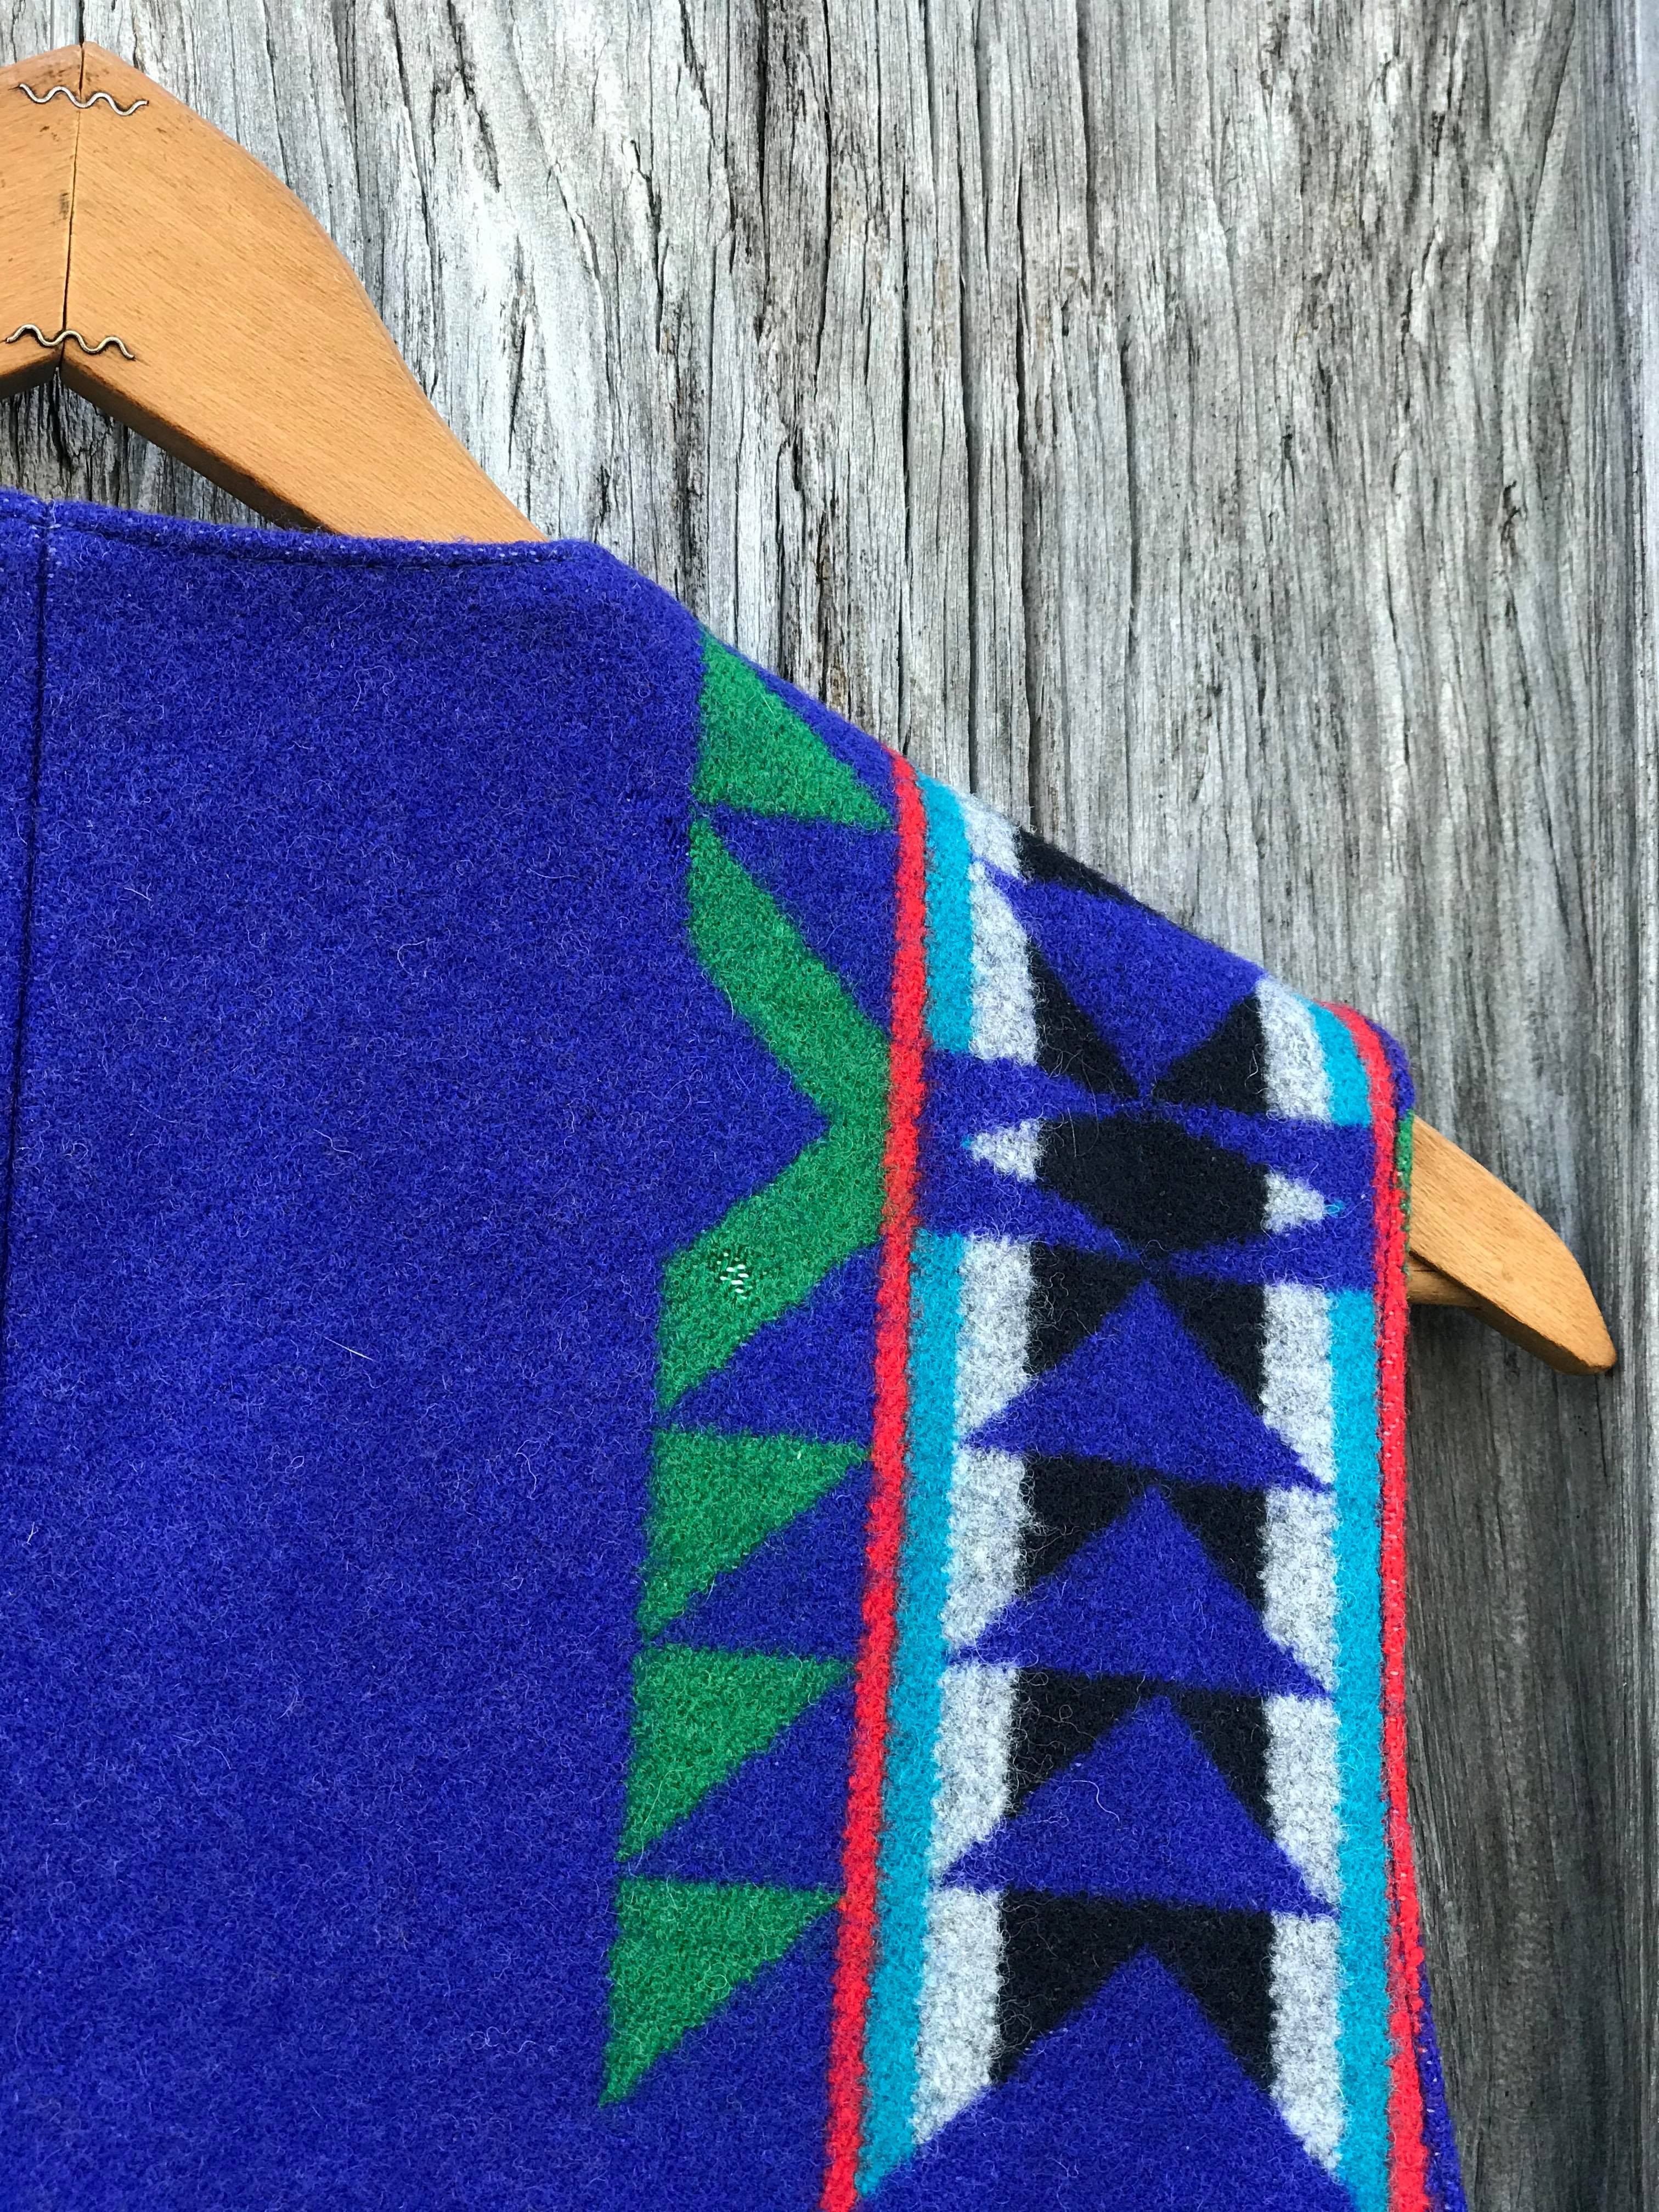 Vintage Pendleton Wool Vest